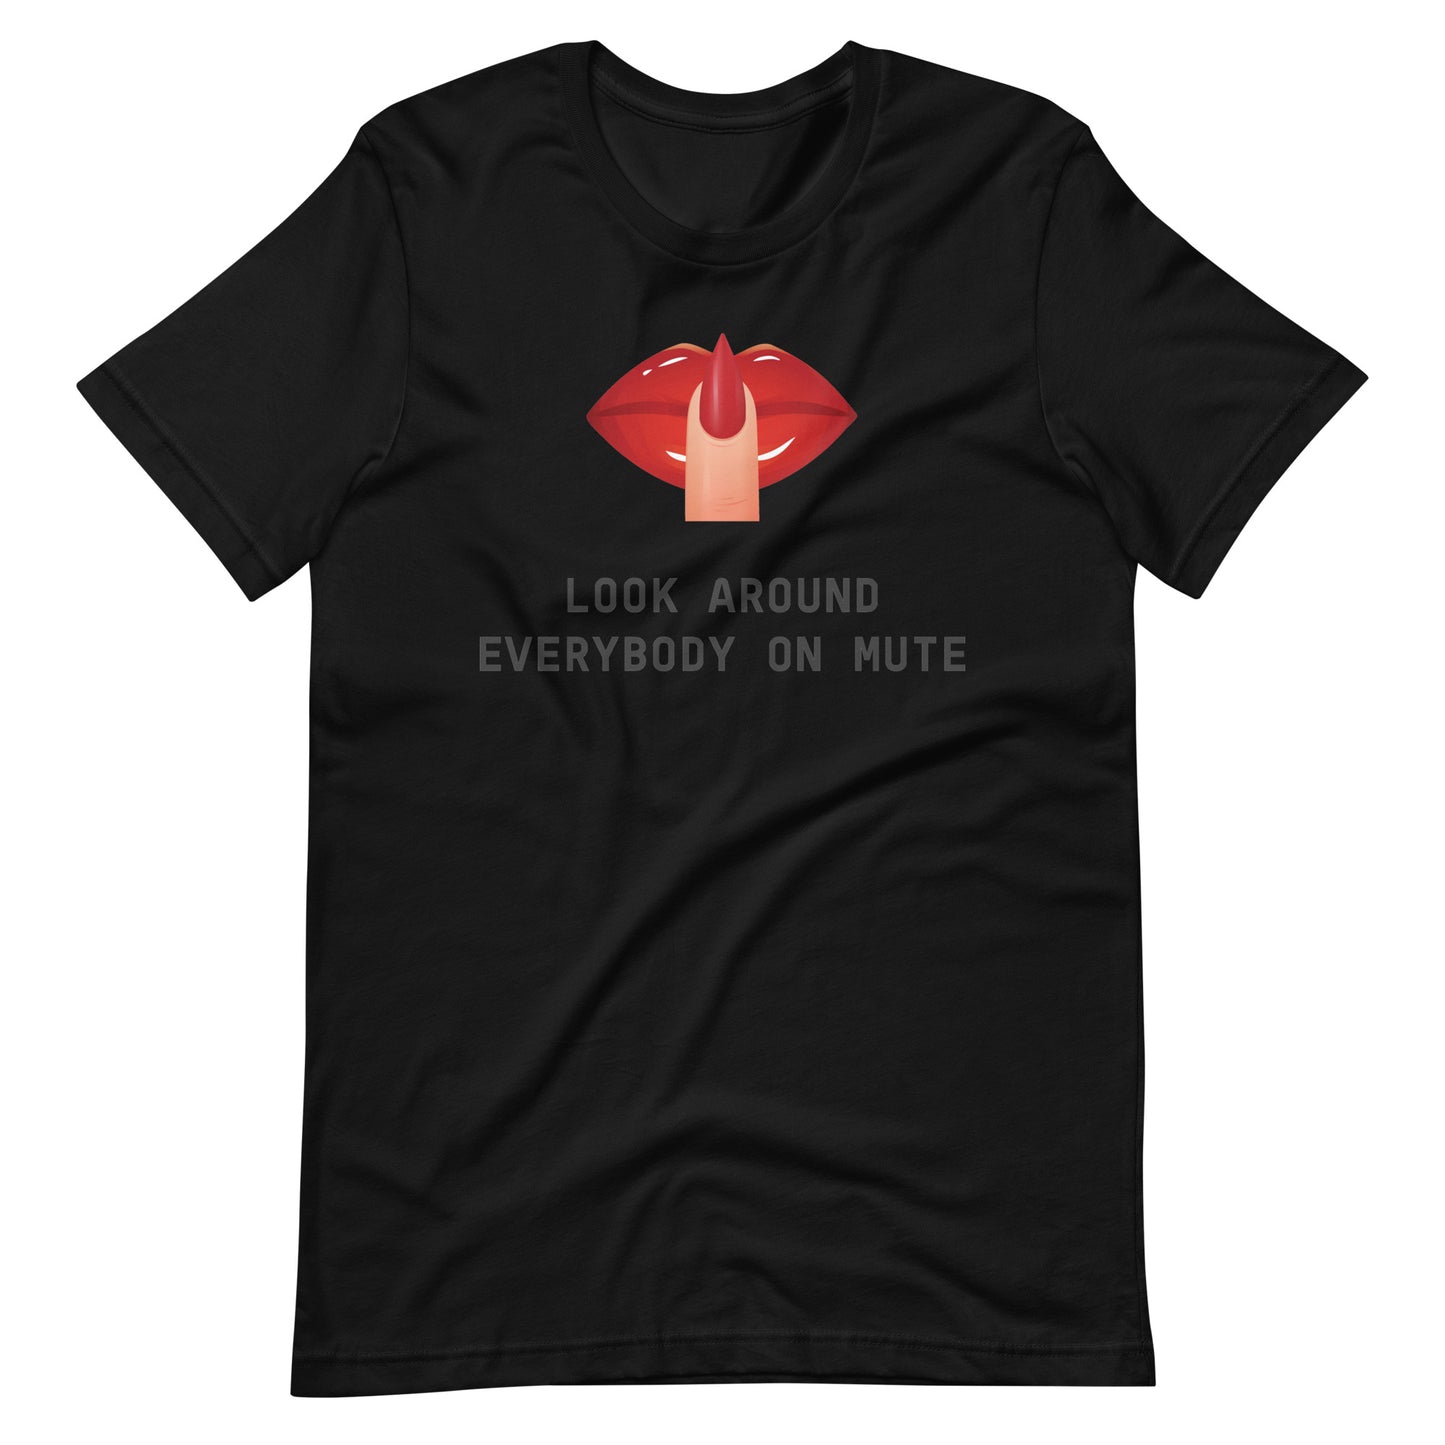 Red Lips Mute Unisex t-shirt